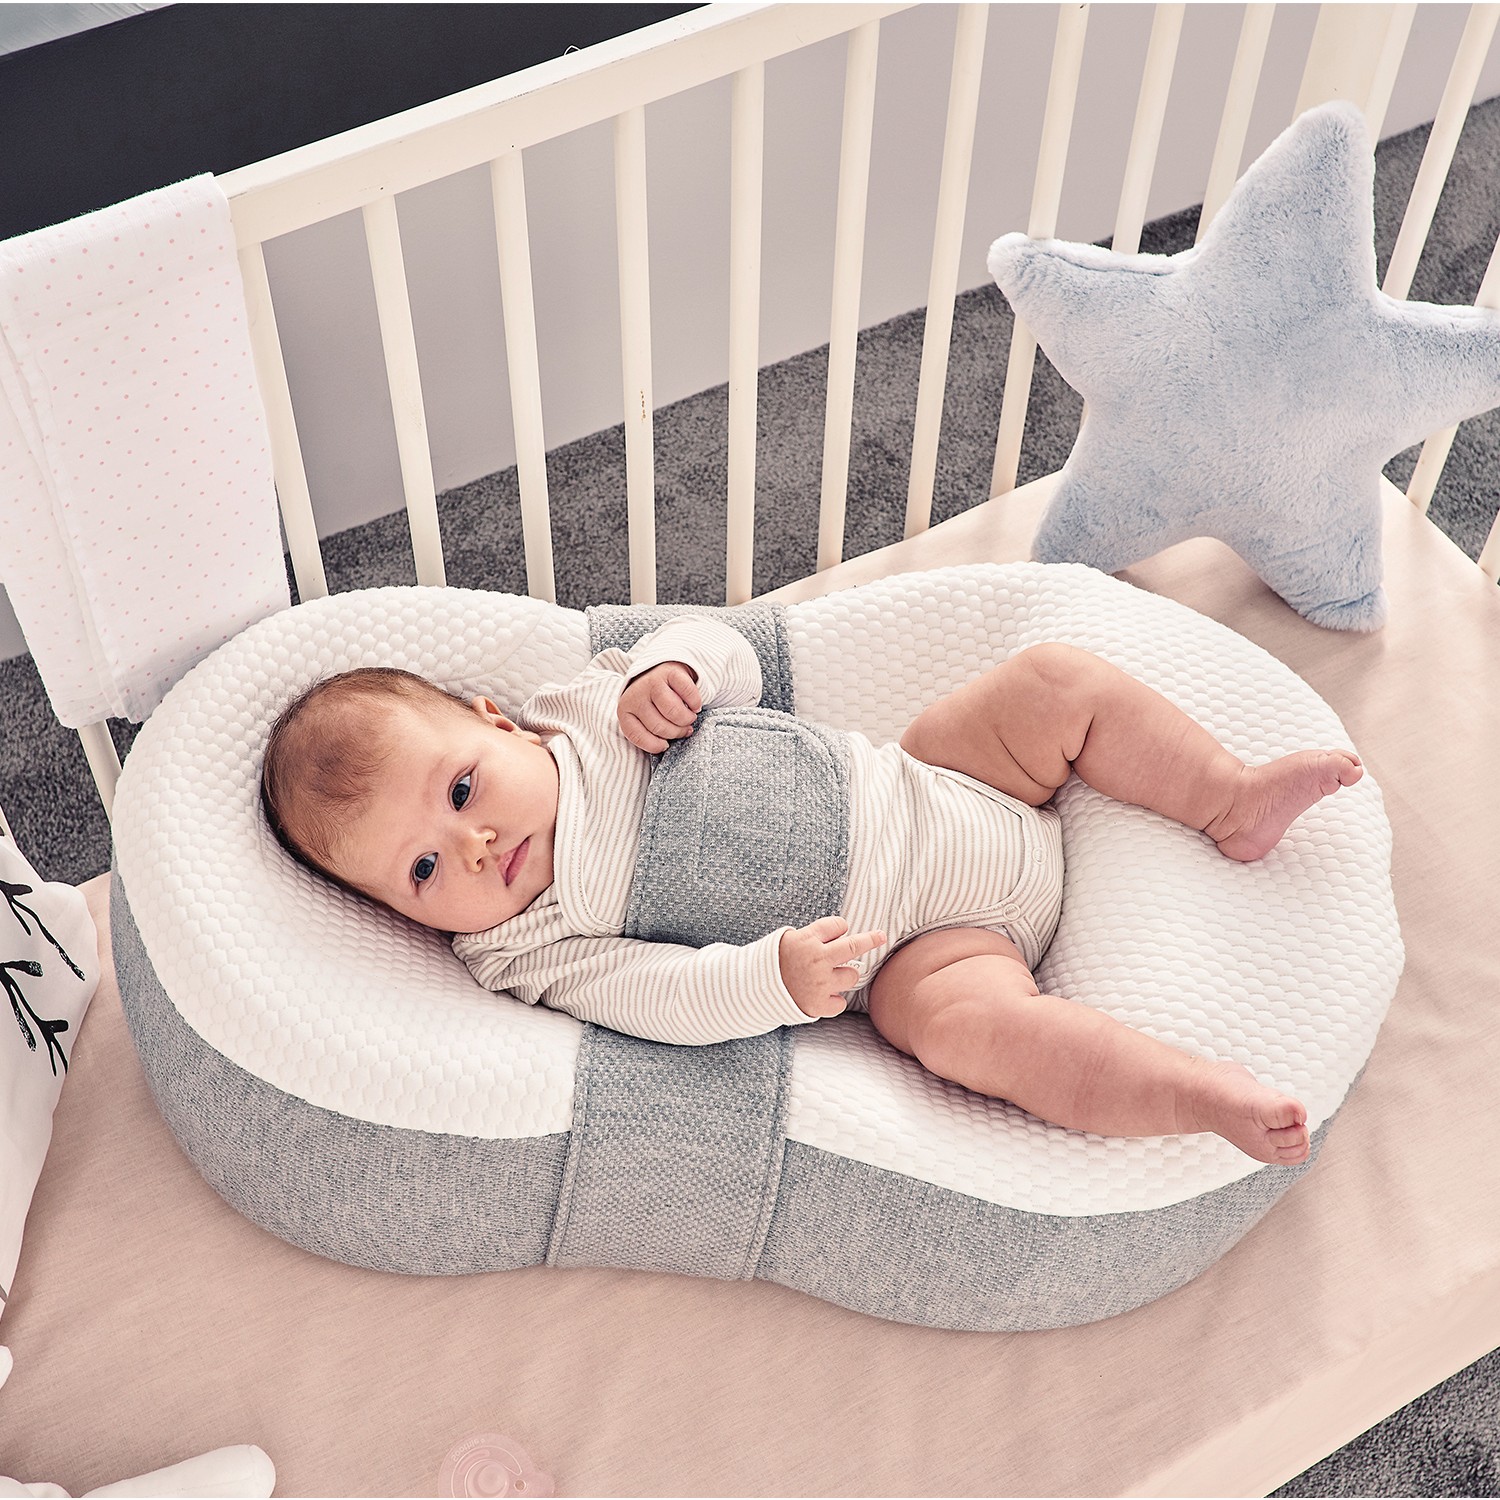 Reflü Yatağında Bebek Nasıl Yatirilir yatak